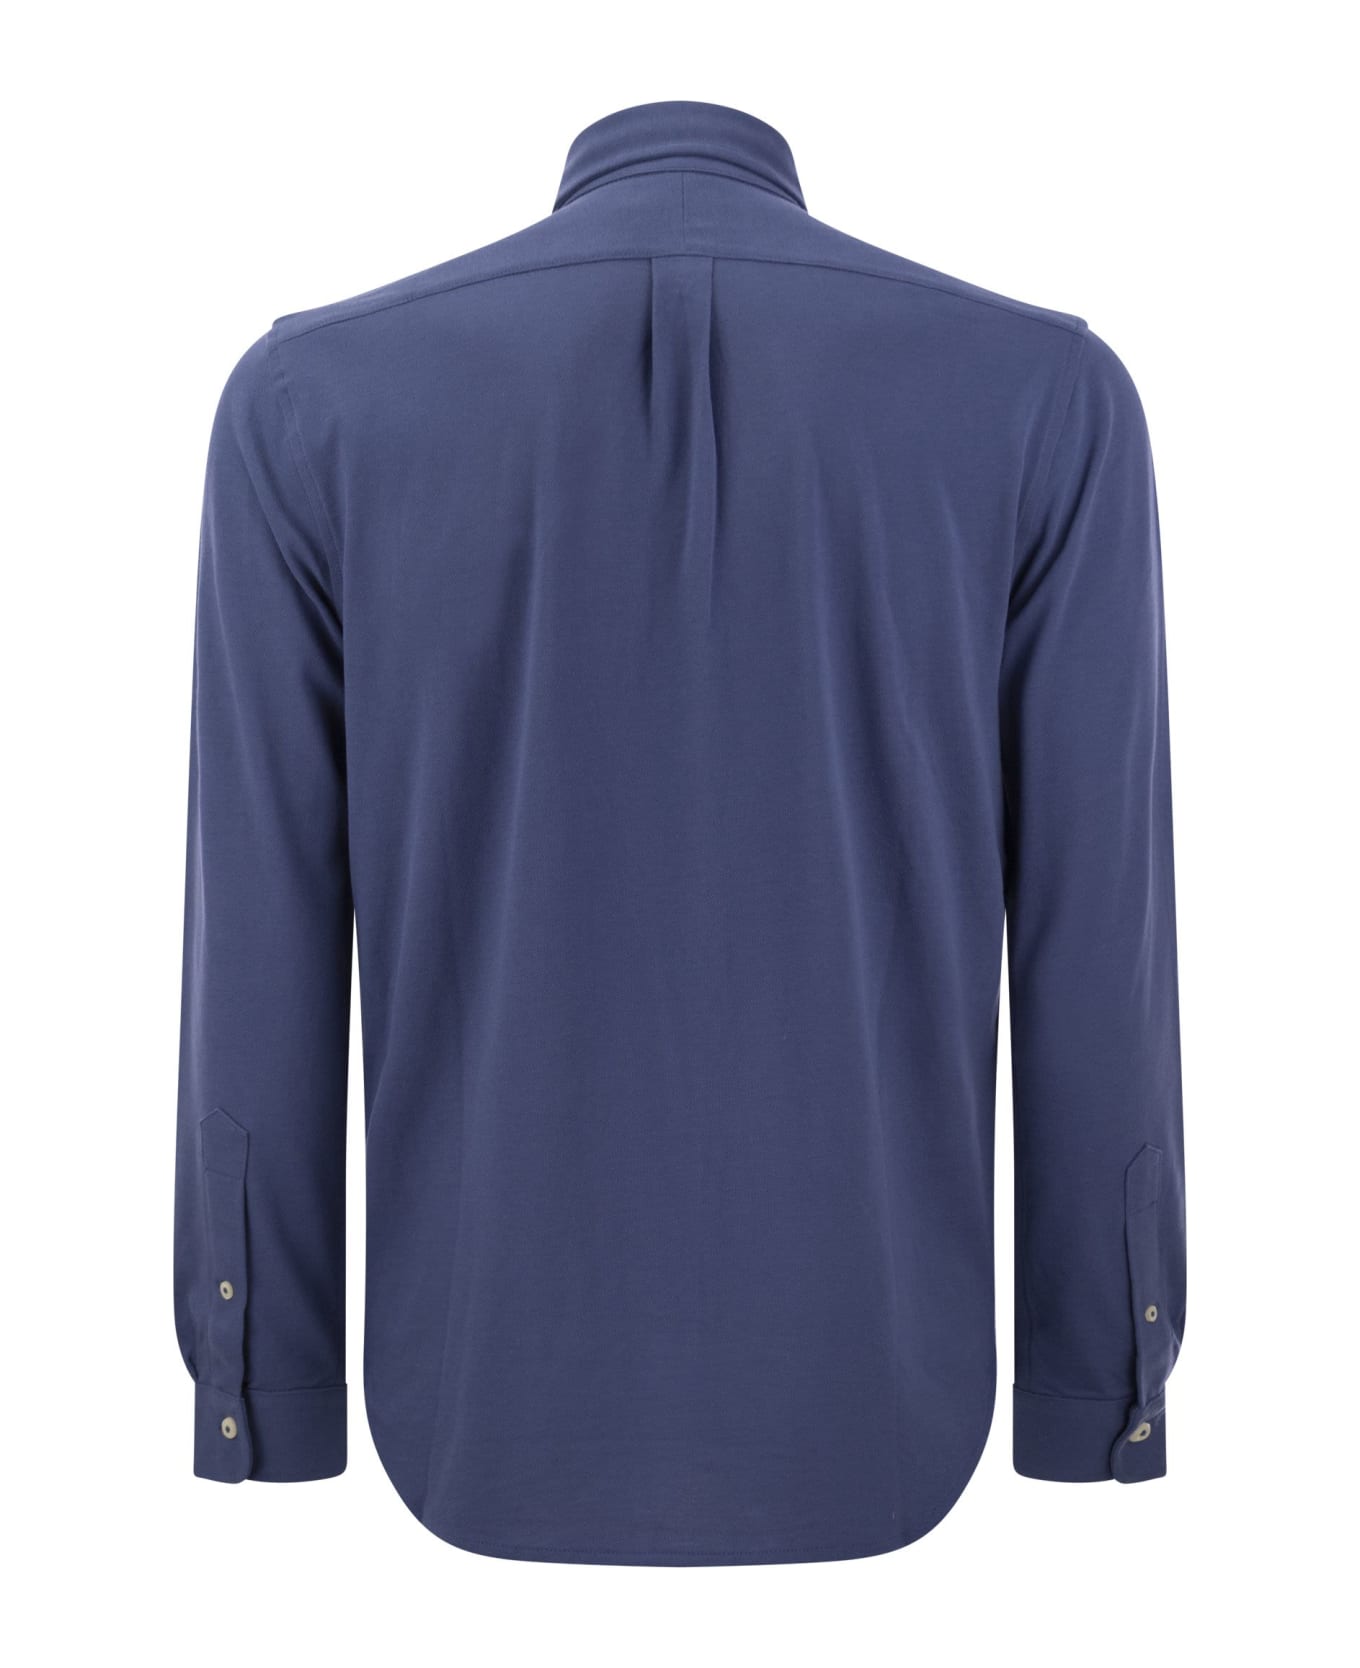 Polo Ralph Lauren Ultralight Pique Shirt - Avio シャツ